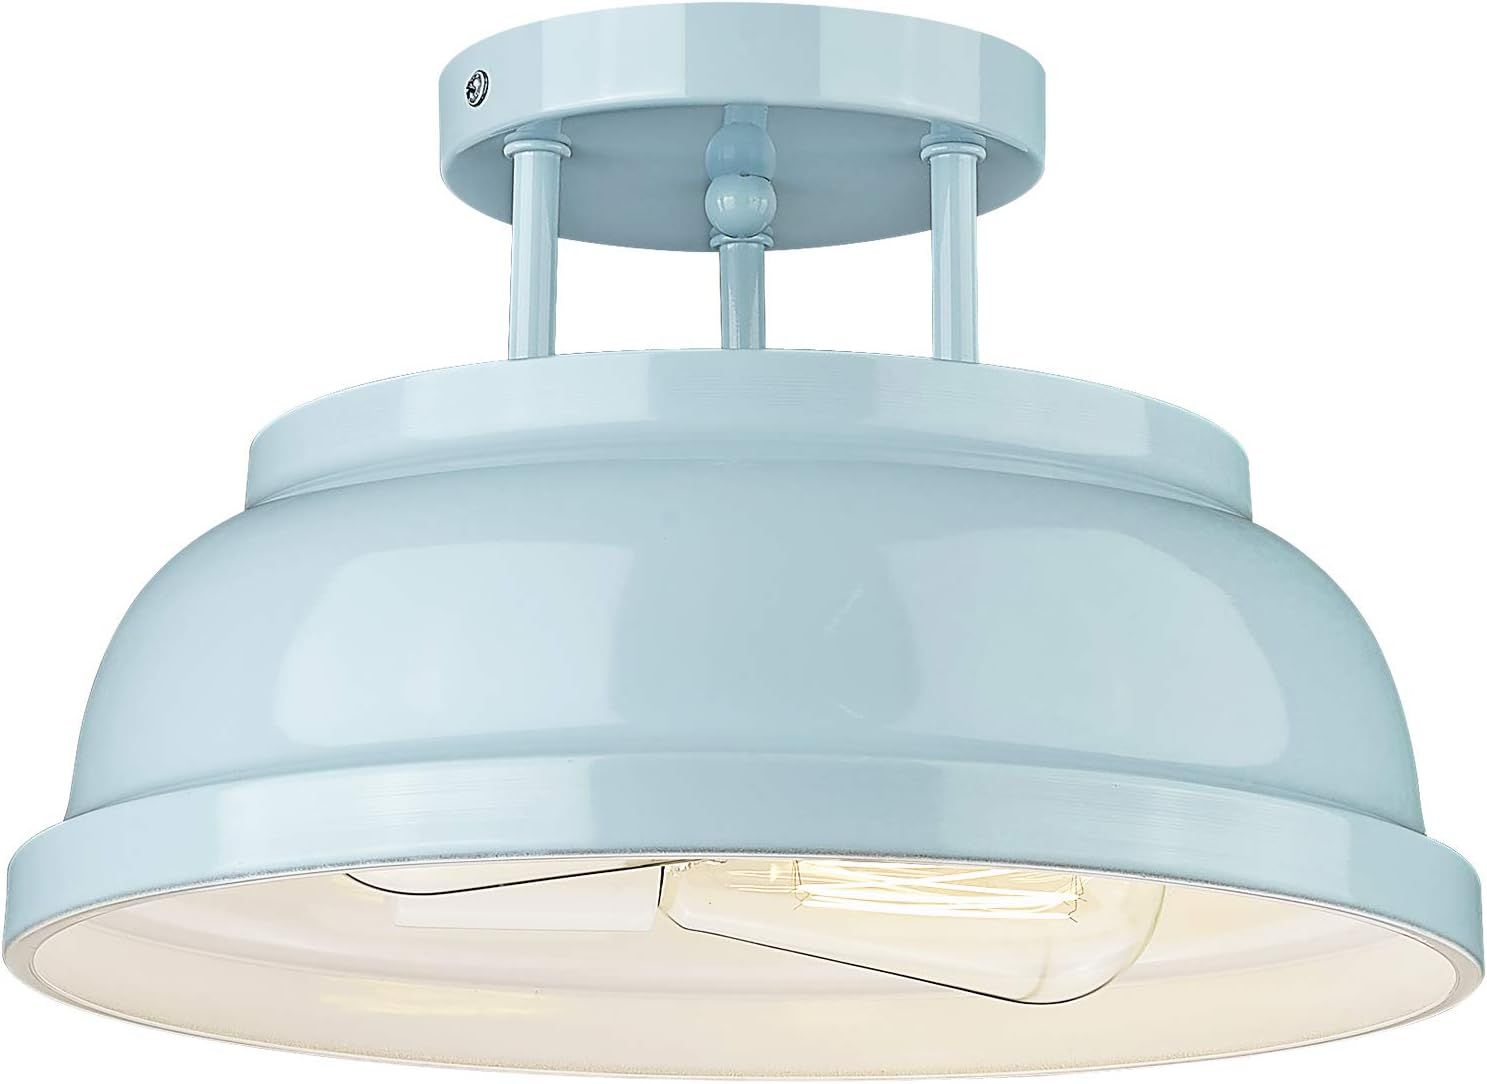 Zeyu Modern Semi Flush Ceiling Light - 2-Light Ceiling Light Fixture for Living Room Bedroom Kitc... | Amazon (US)